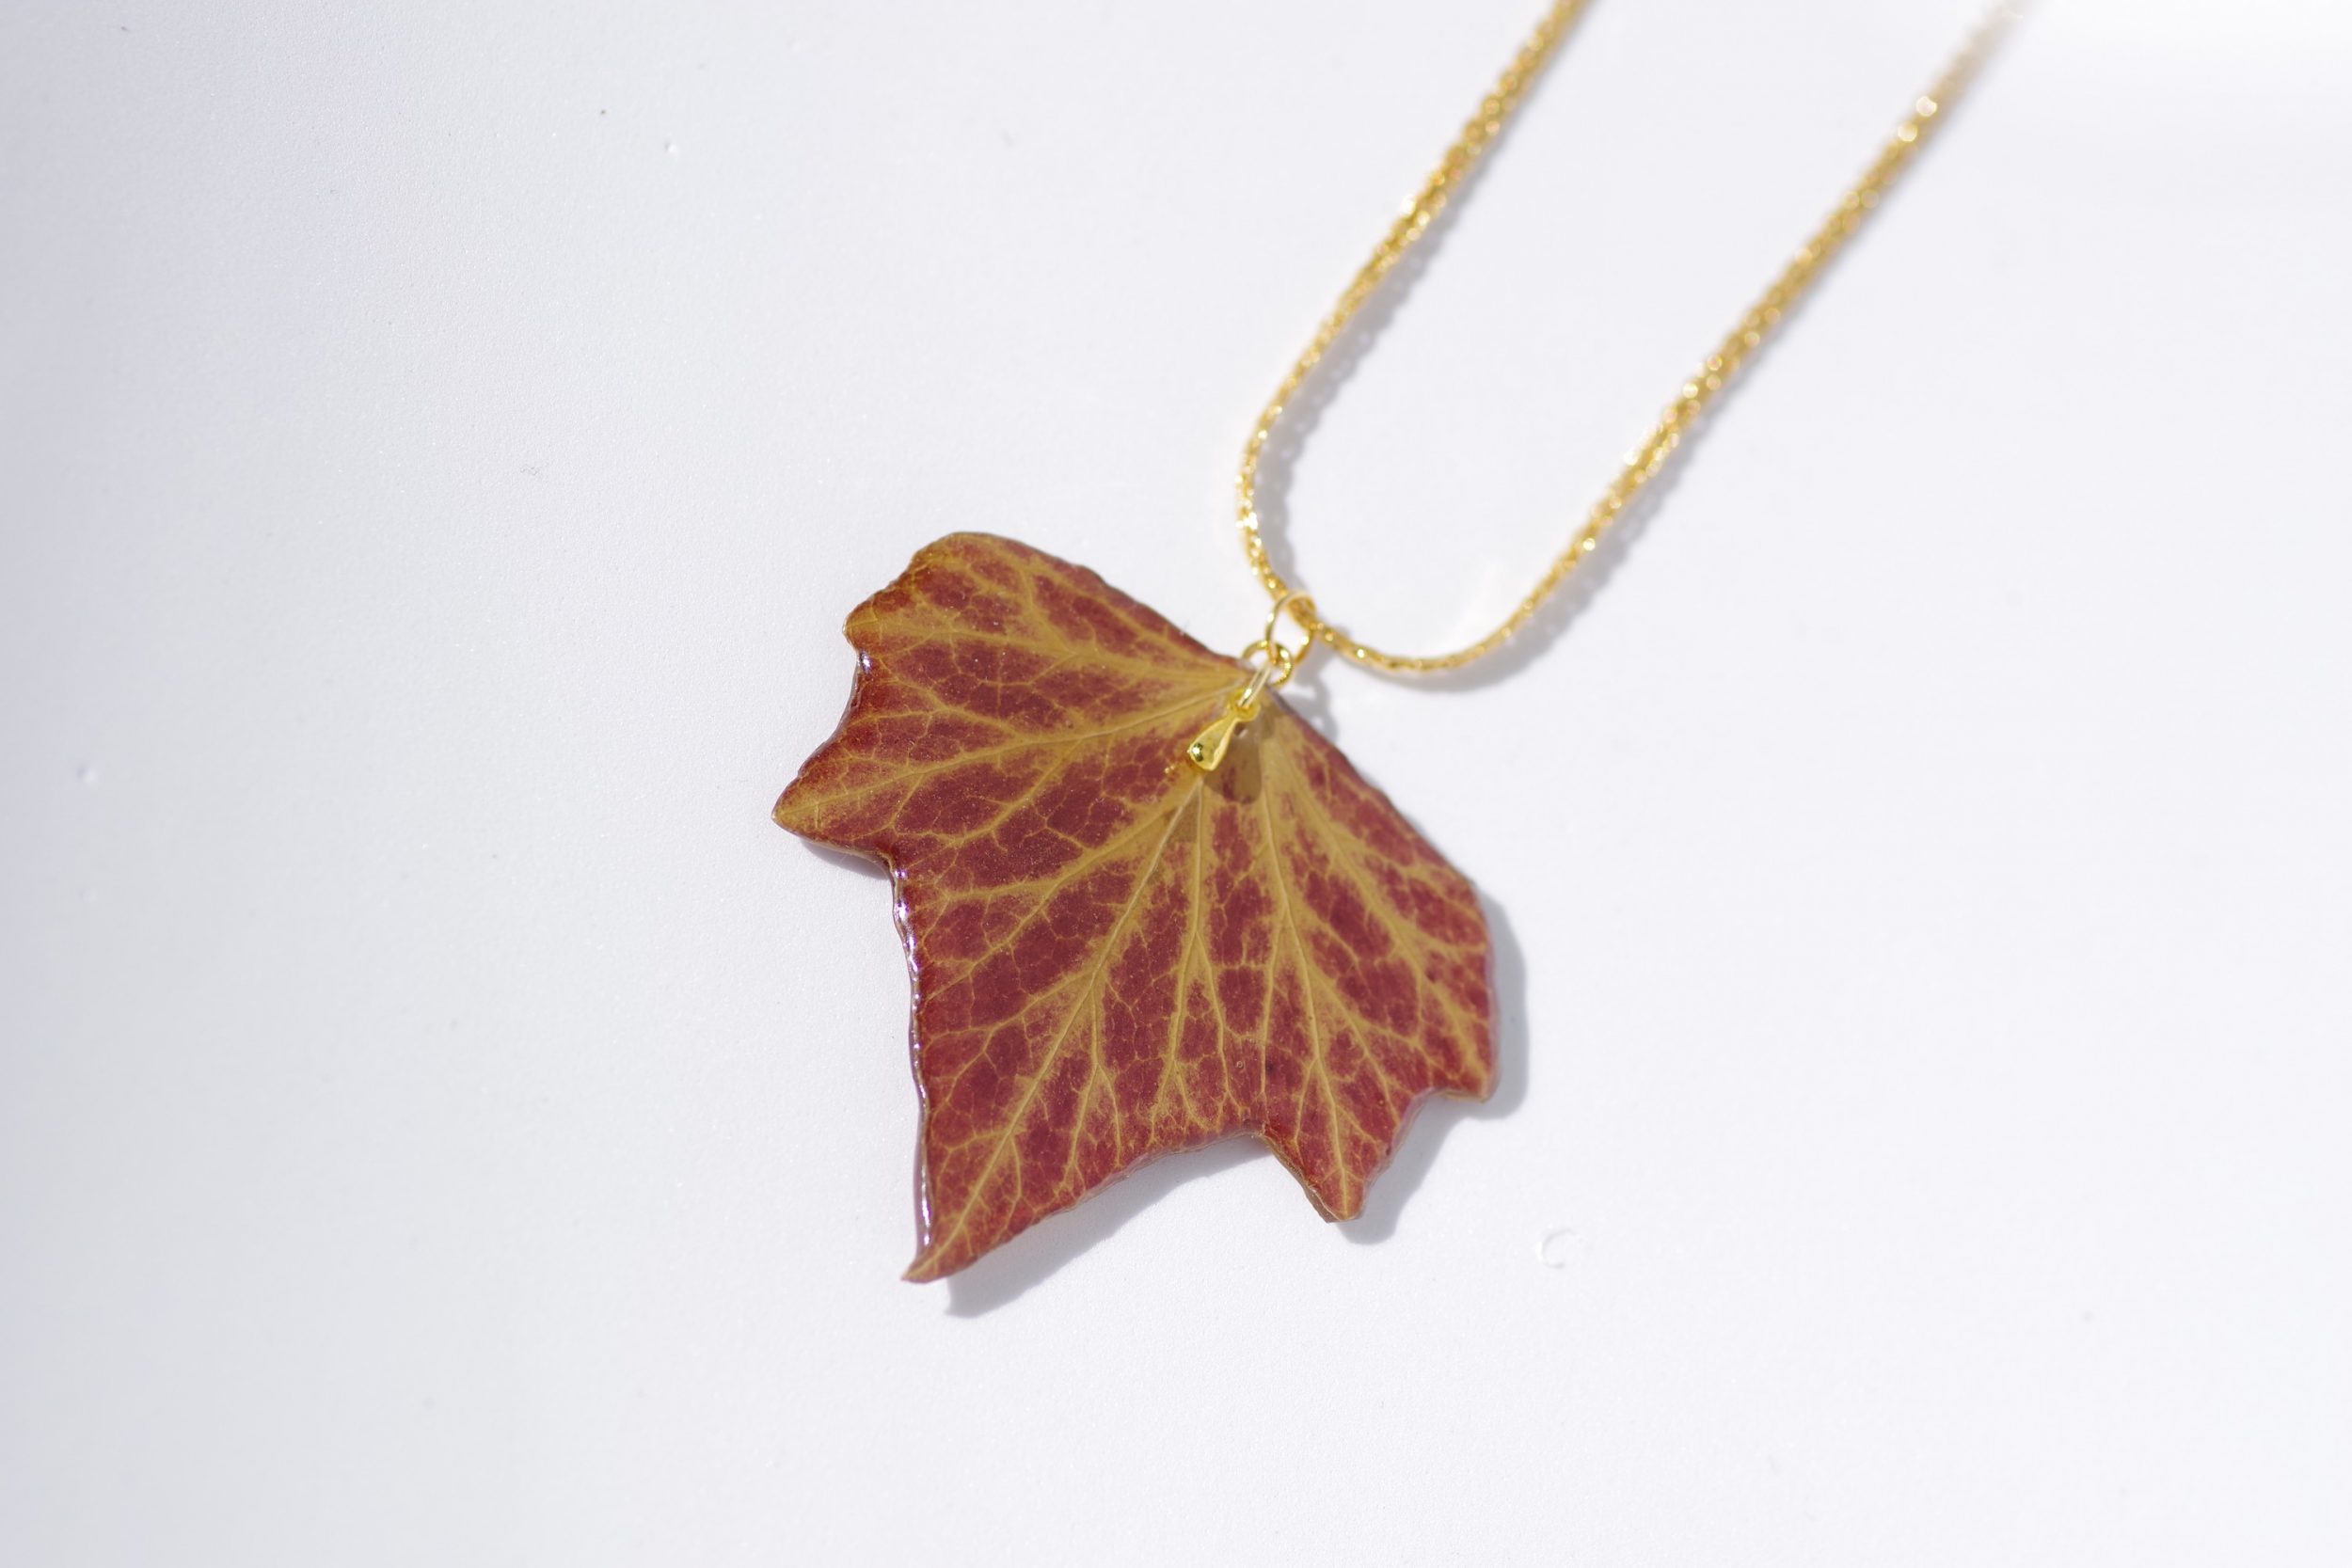 belle feuille de lierre aux couleurs d'automne transformée en pendentif sur une chaine plaquée or ouvragée